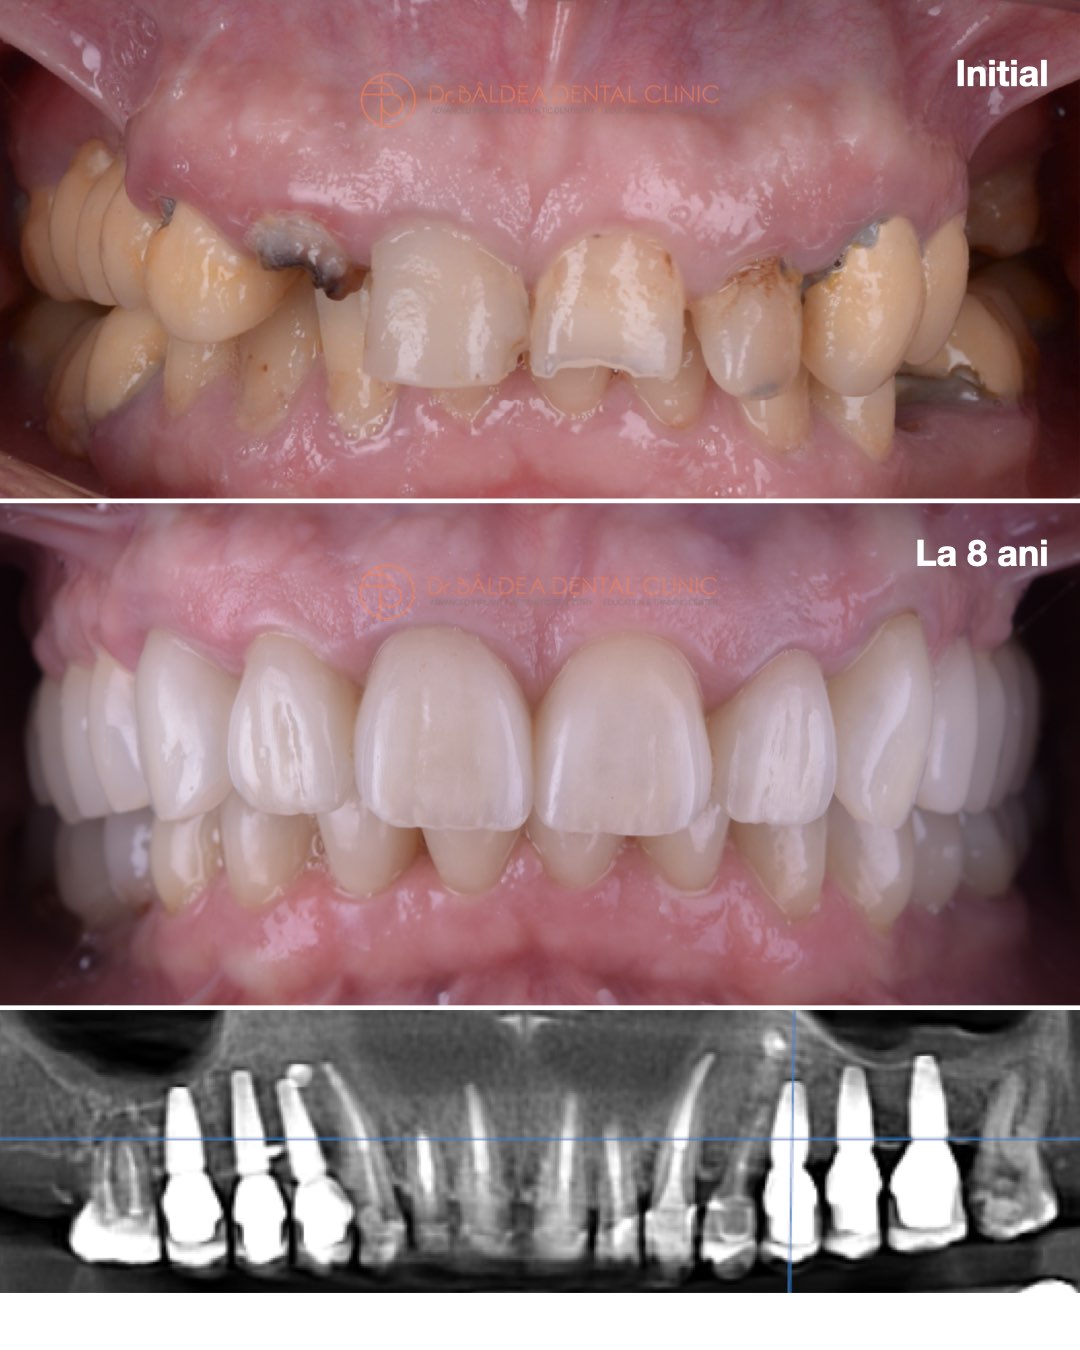 Implantologie dentara cu reusita dupa 8 ani de la inserarea implanturilor dentare, la clinica stomatologica dr. Baldea Timisoara.